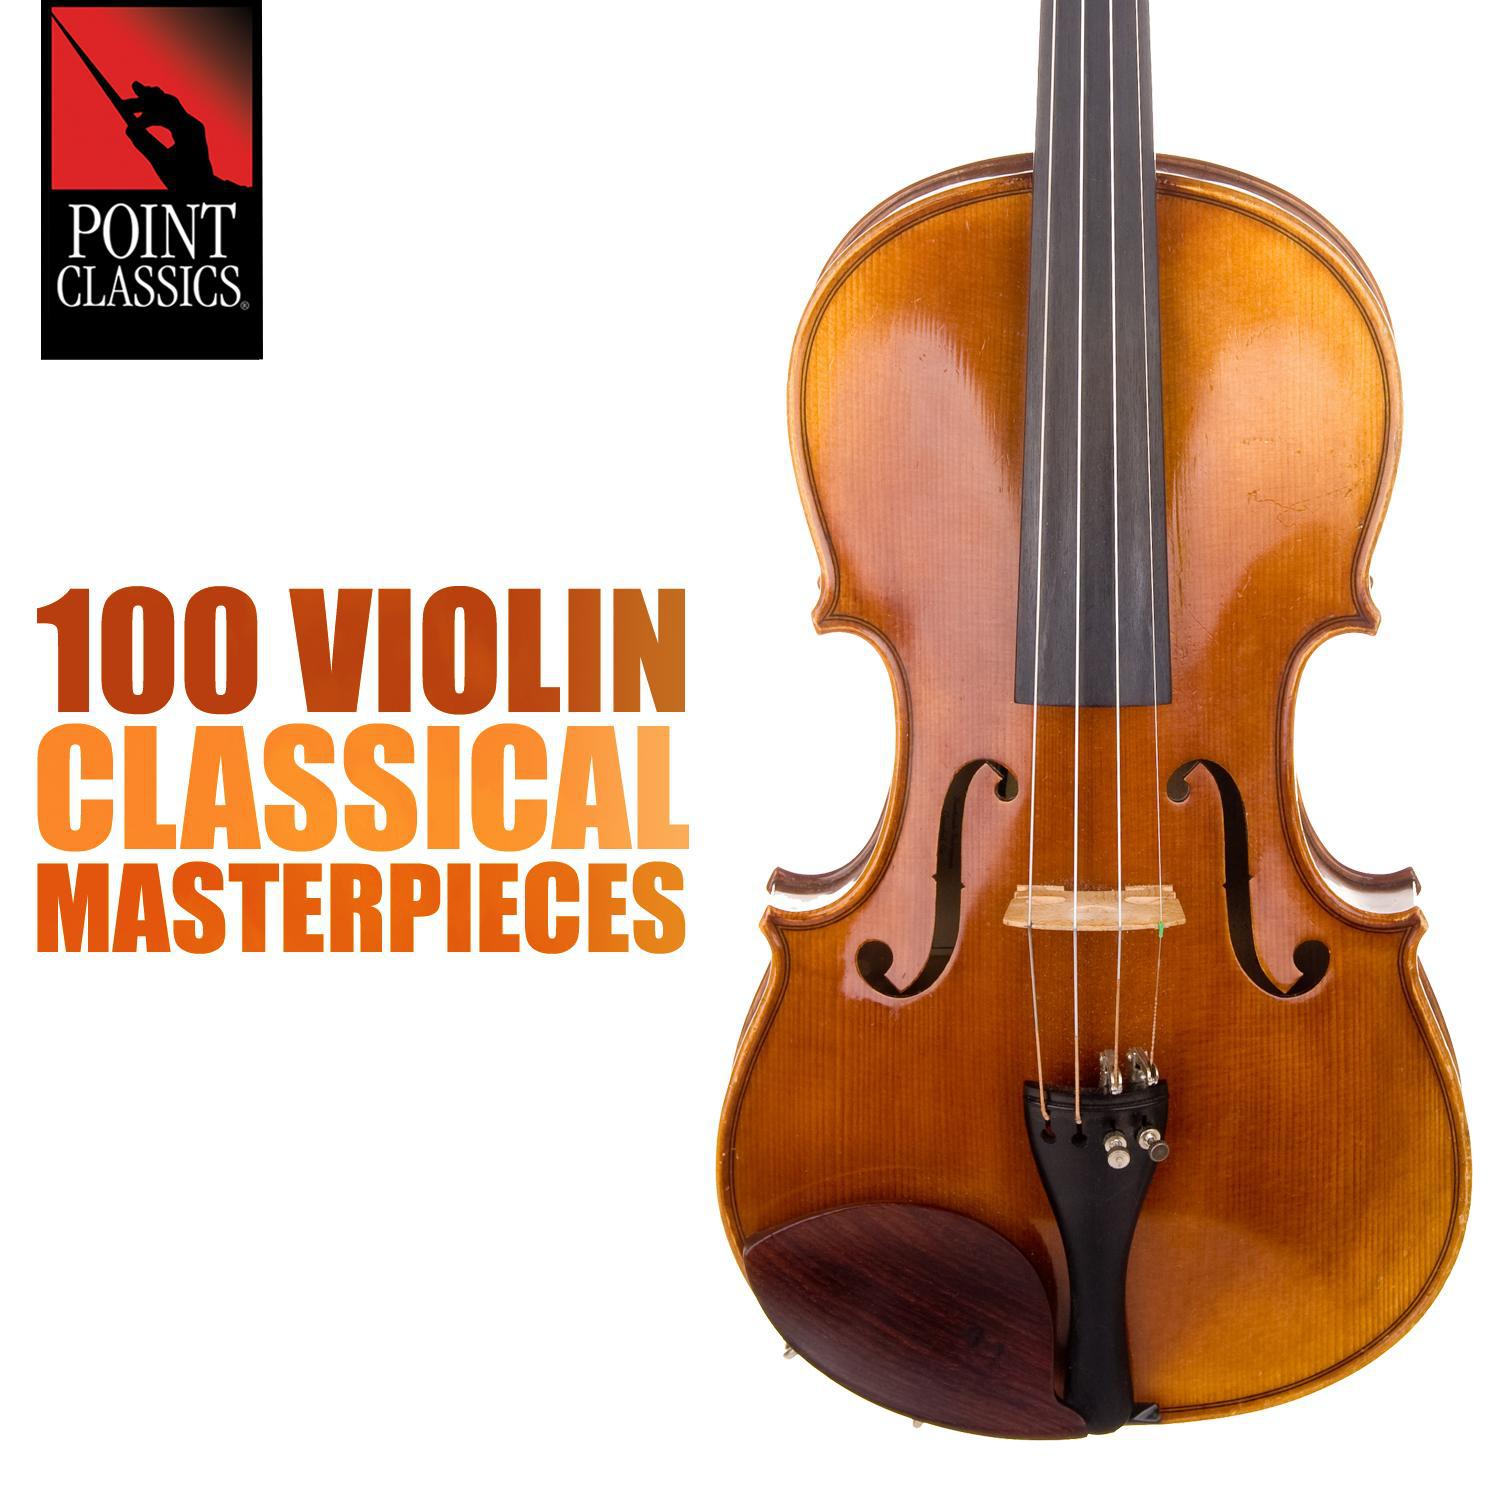 Violin Sonata No. 6 in A Major, Op. 30, No. 1: II. Adagio Molto Espressivo